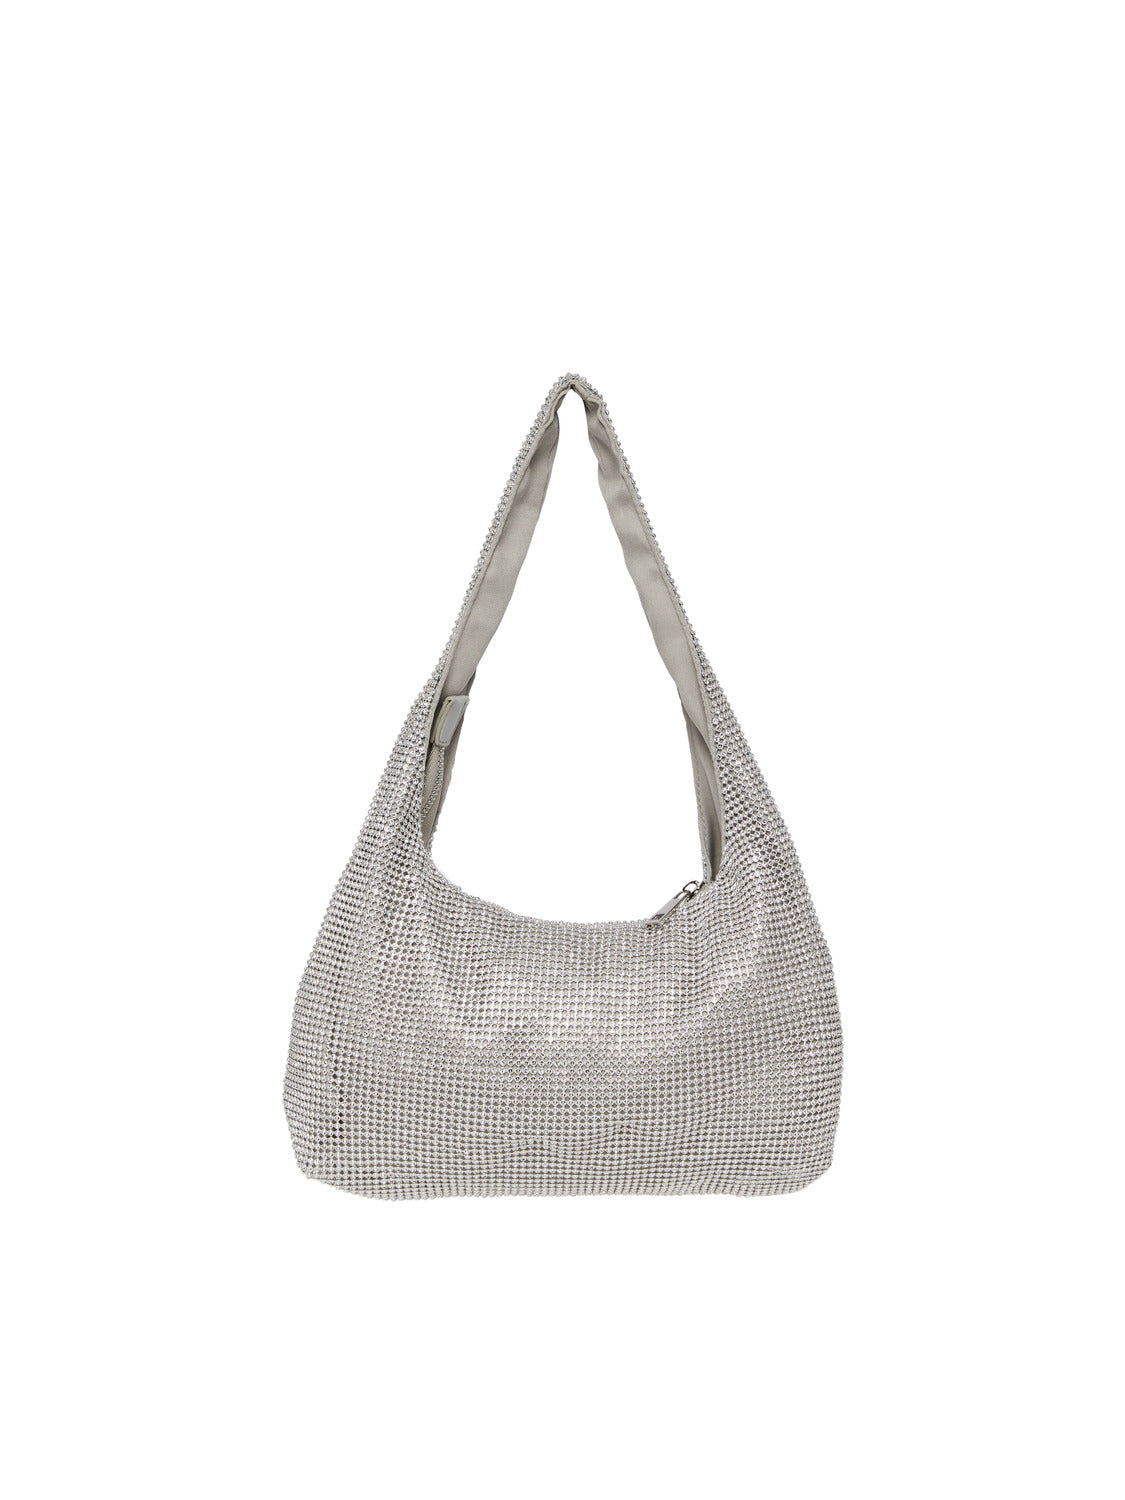 PCMILLA Handbag - Silver Colour